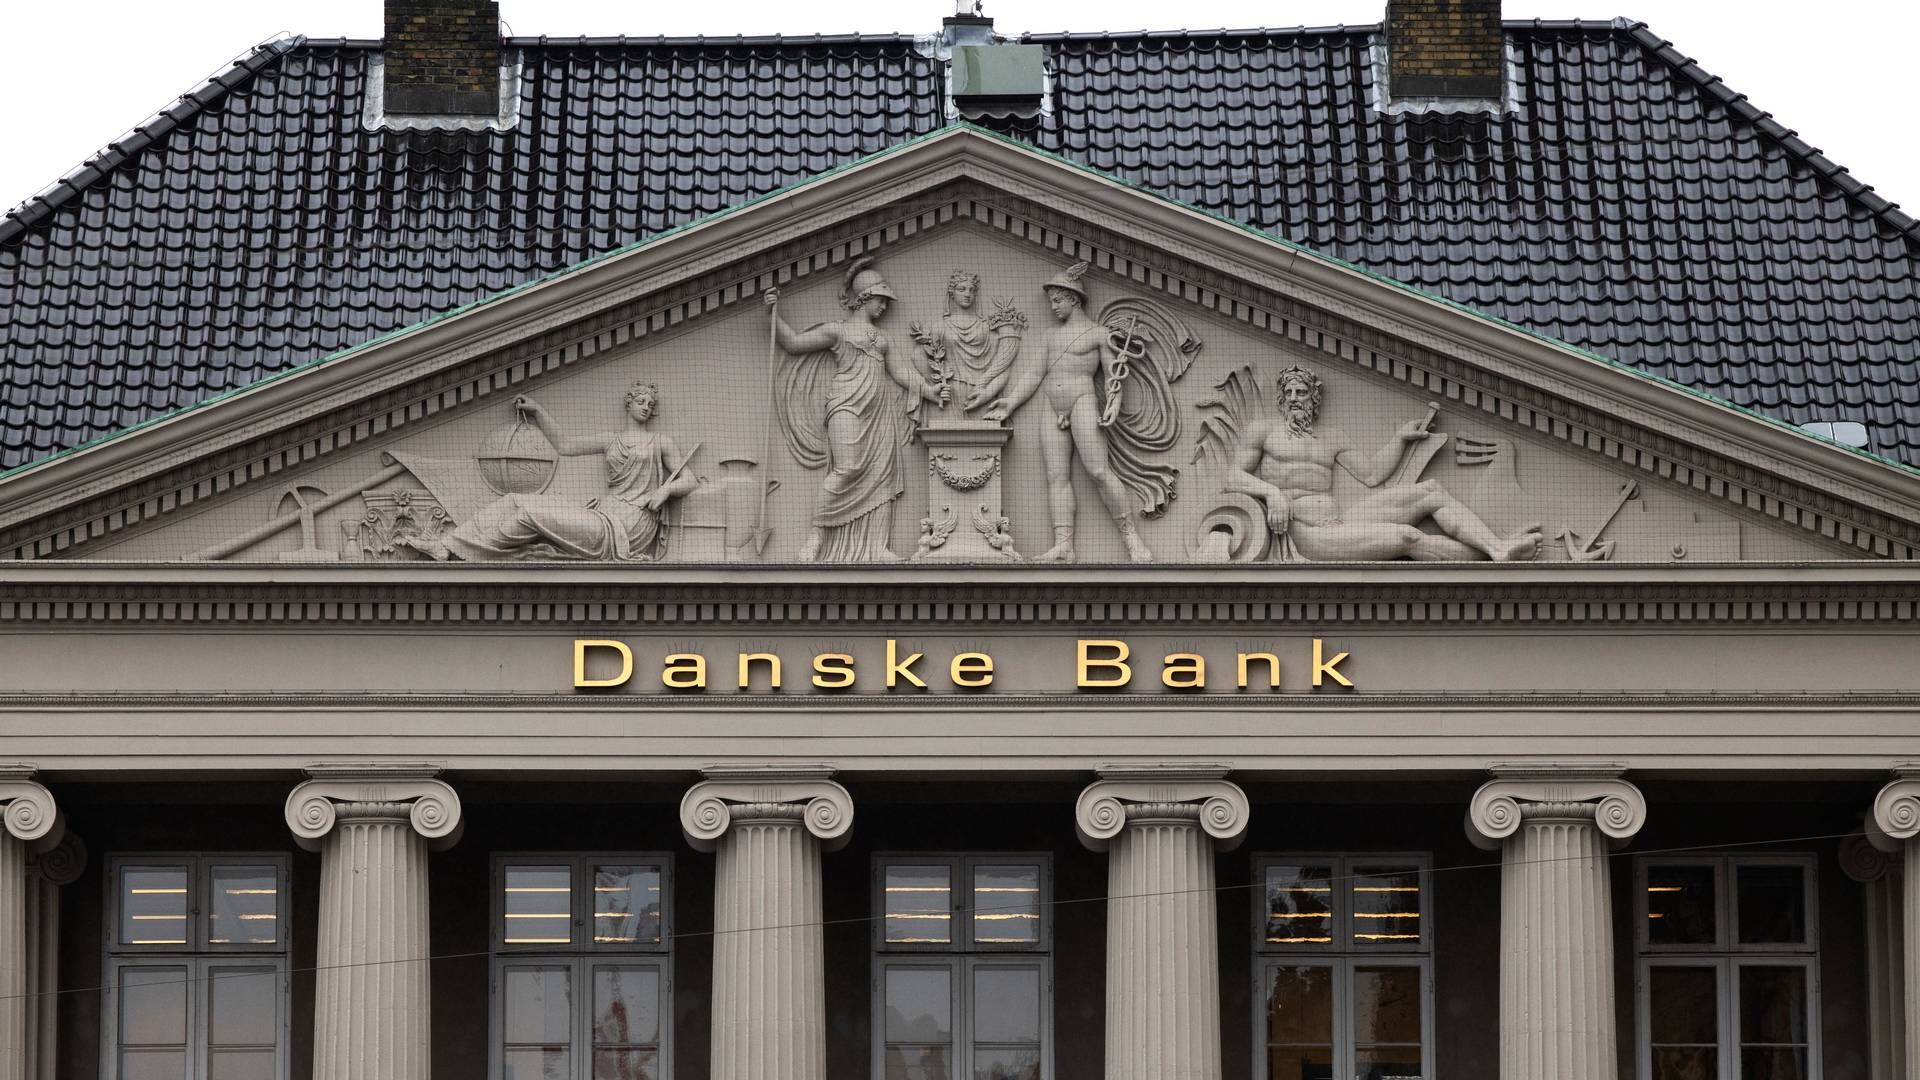 Danske Banks headquarters at the public square of Kongens Nytorv, Copenhagen